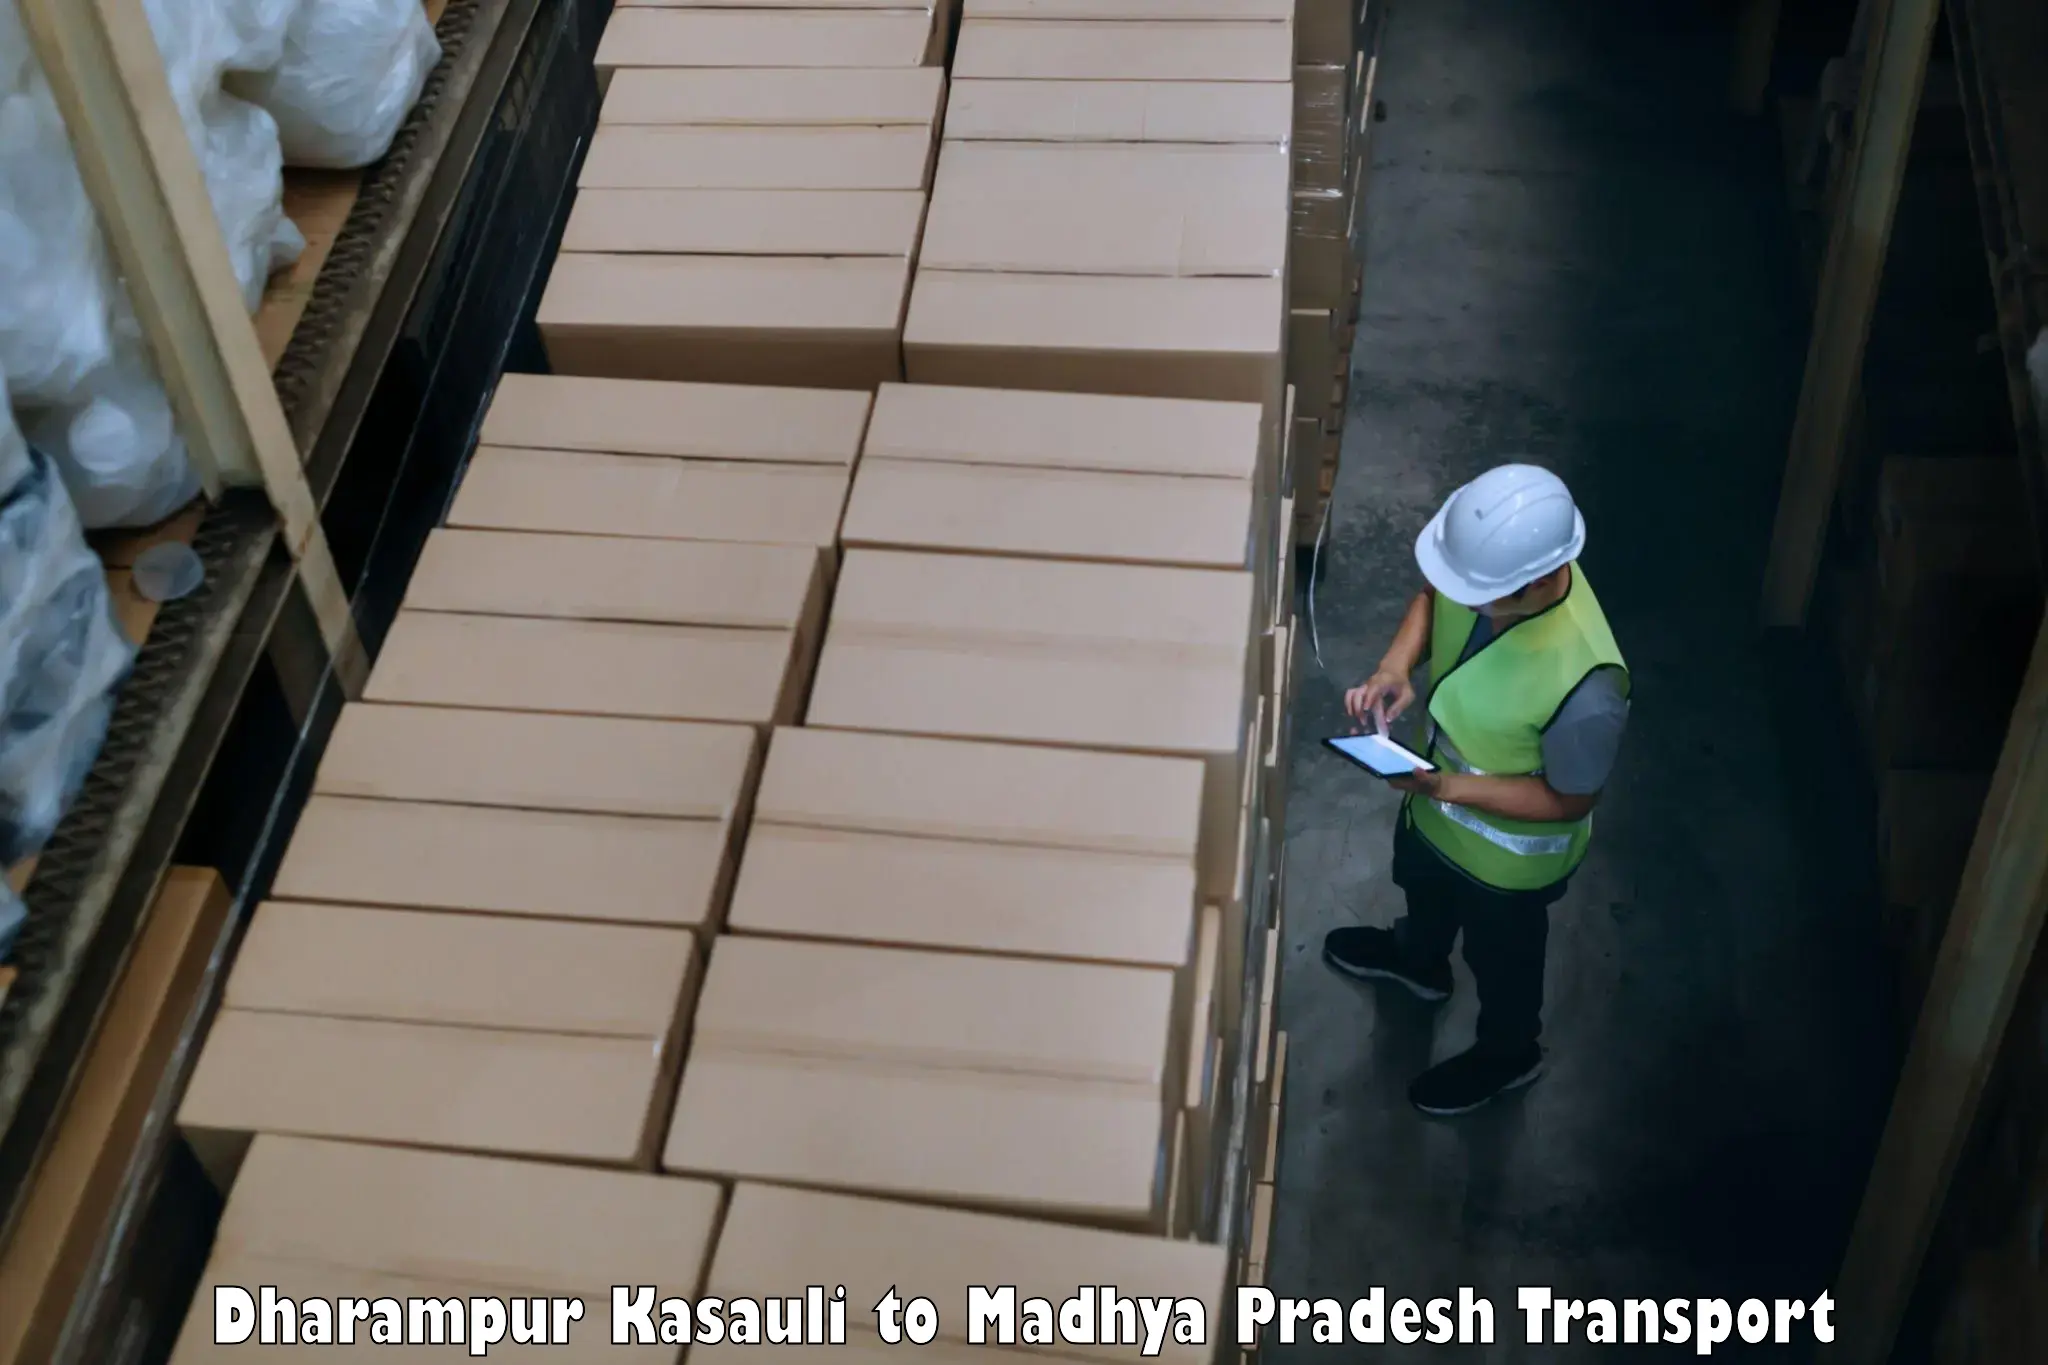 Express transport services Dharampur Kasauli to Rewa